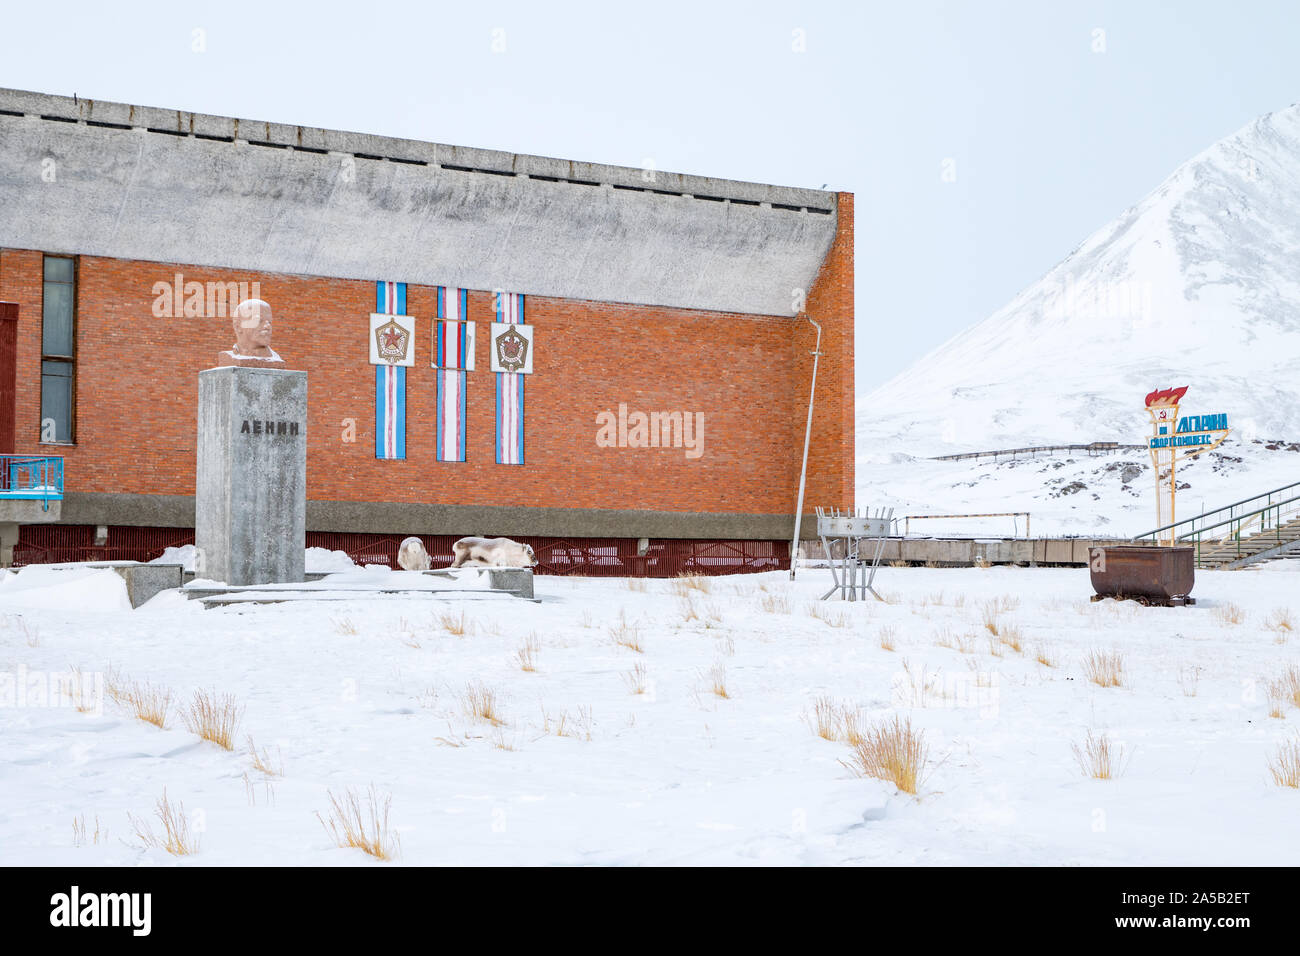 PYRAMIDEN, NORVÈGE - 15 mars 2019 : l'extérieur de la piscine dans le règlement de l'Arctique russe abandonnés Pyramiden, dans la région de Svalbard, Norvège. Banque D'Images